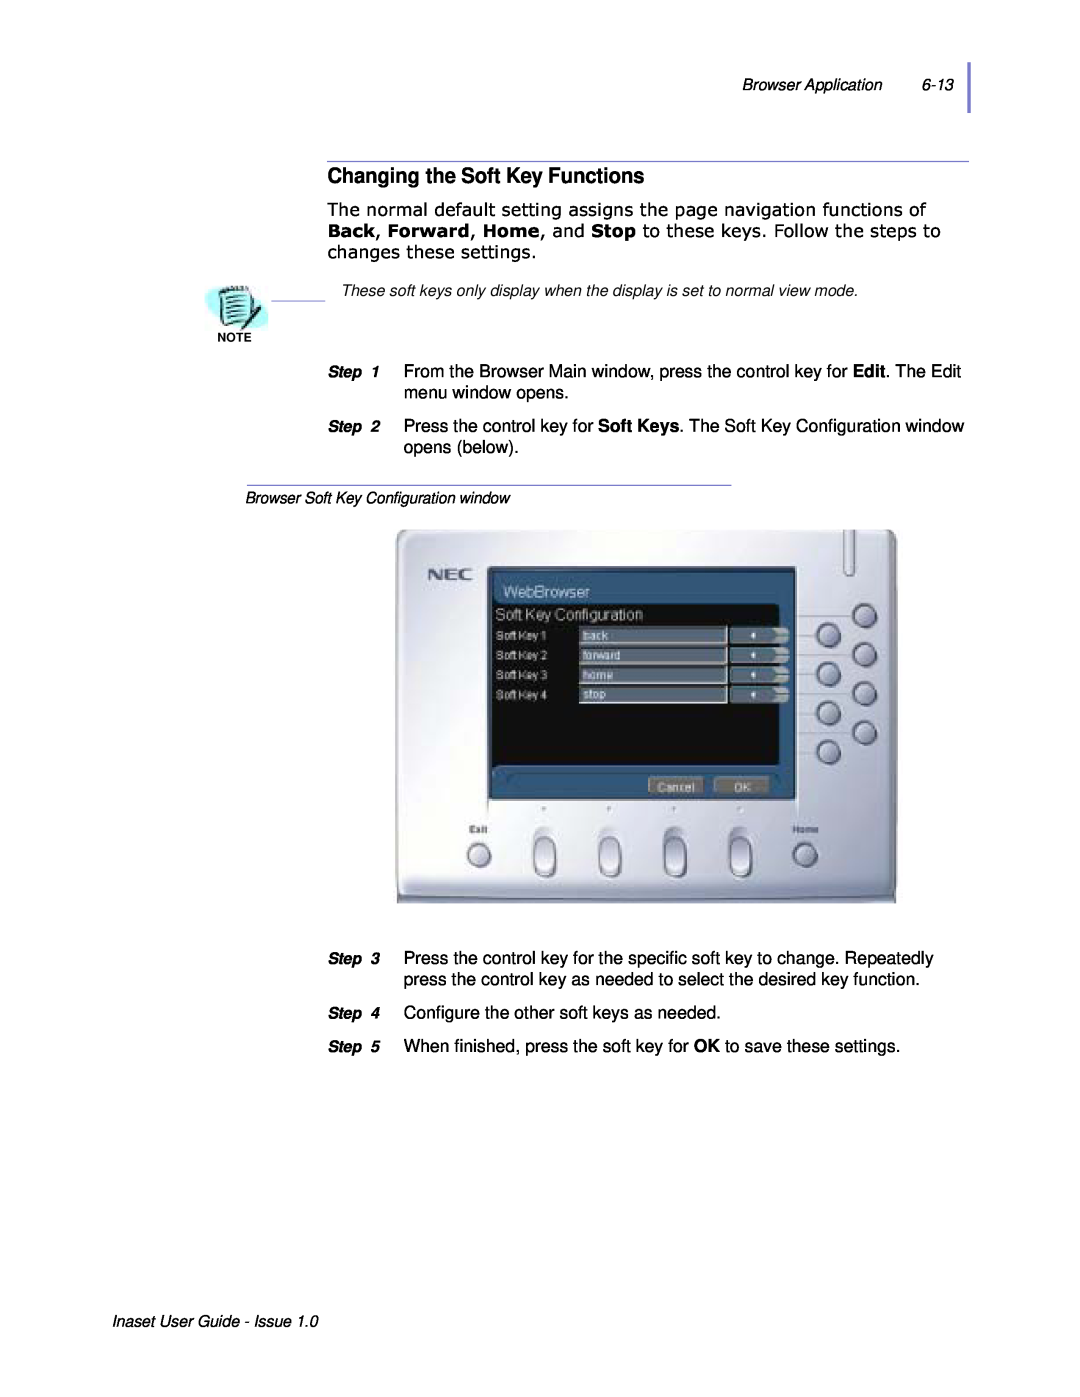 NEC NEAX 2000 IPS manual Changing the Soft Key Functions, Fkdqjhvwkhvhvhwwlqjv 